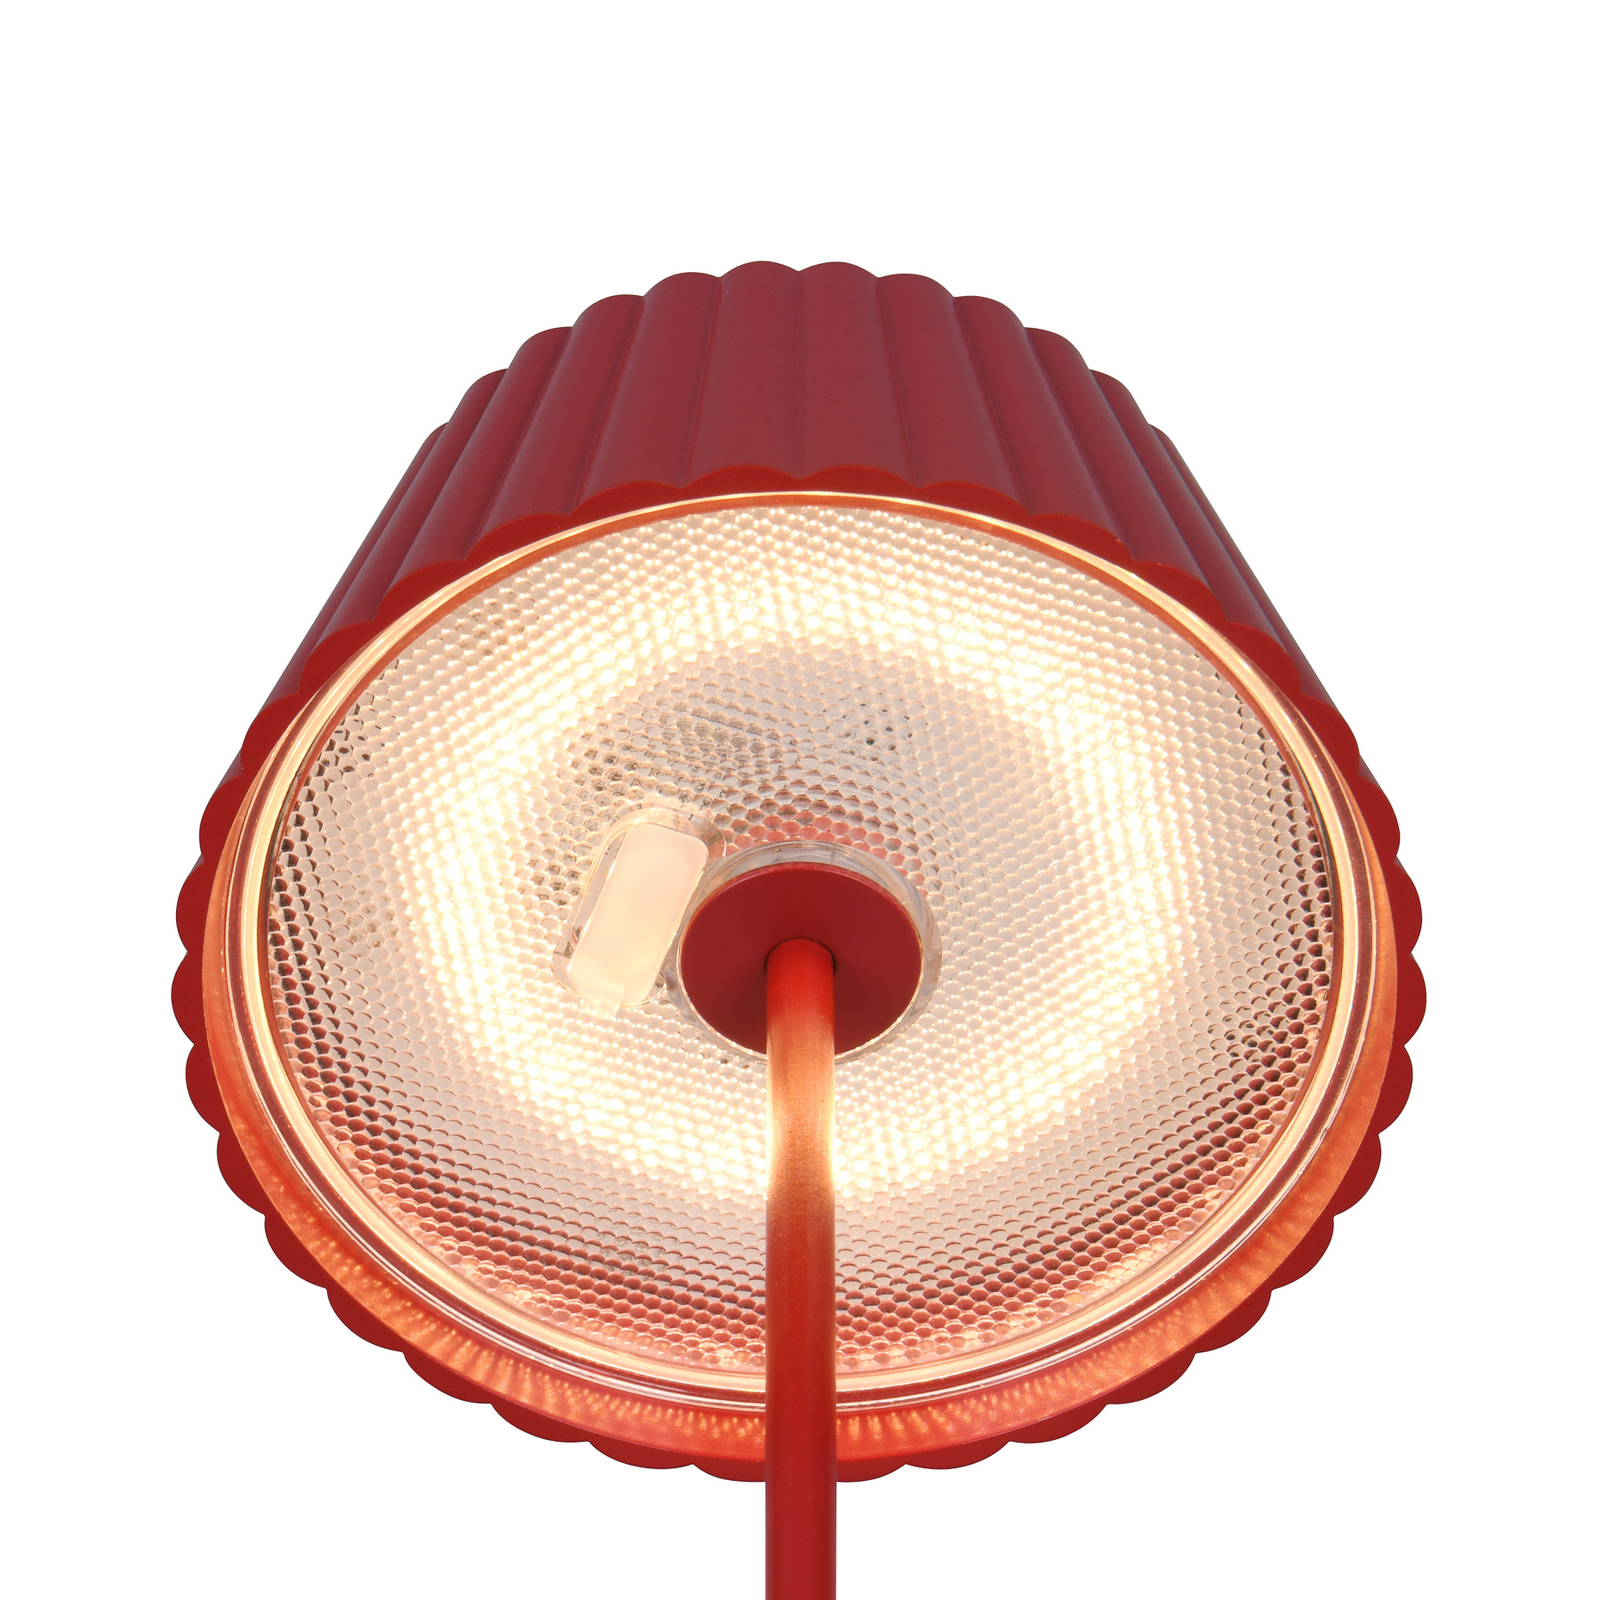 Stojacia lampa Suarez LED s dobíjaním, červená, výška 123 cm, kov